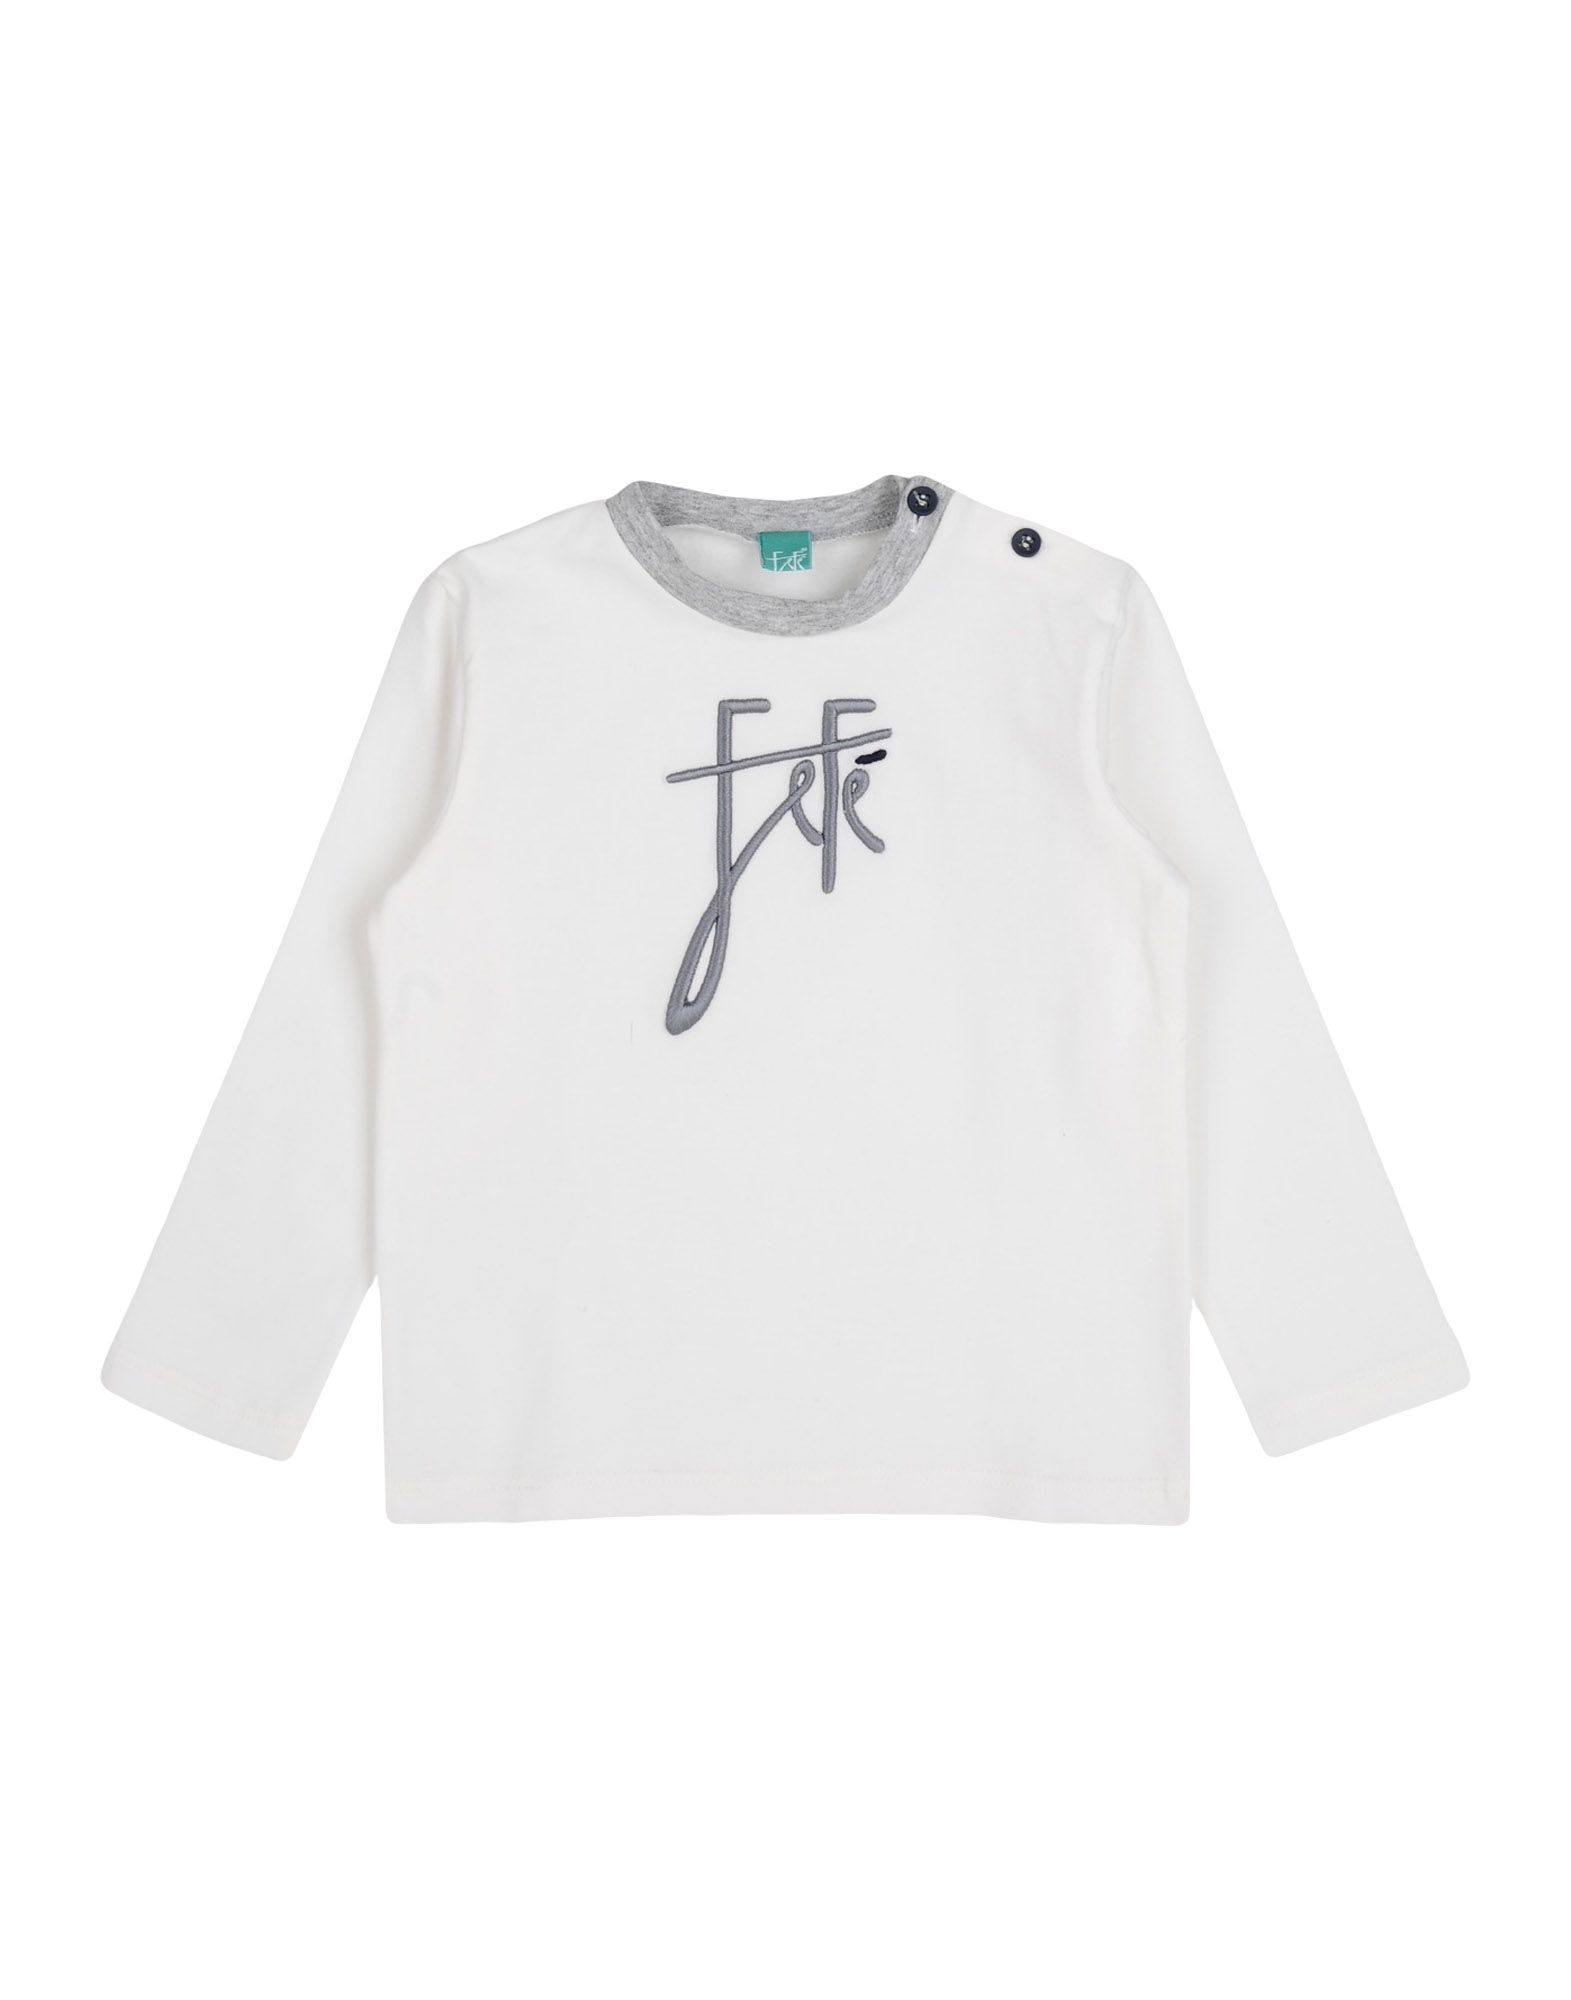  Fefè - Tops - T-shirts - On Yoox.com 